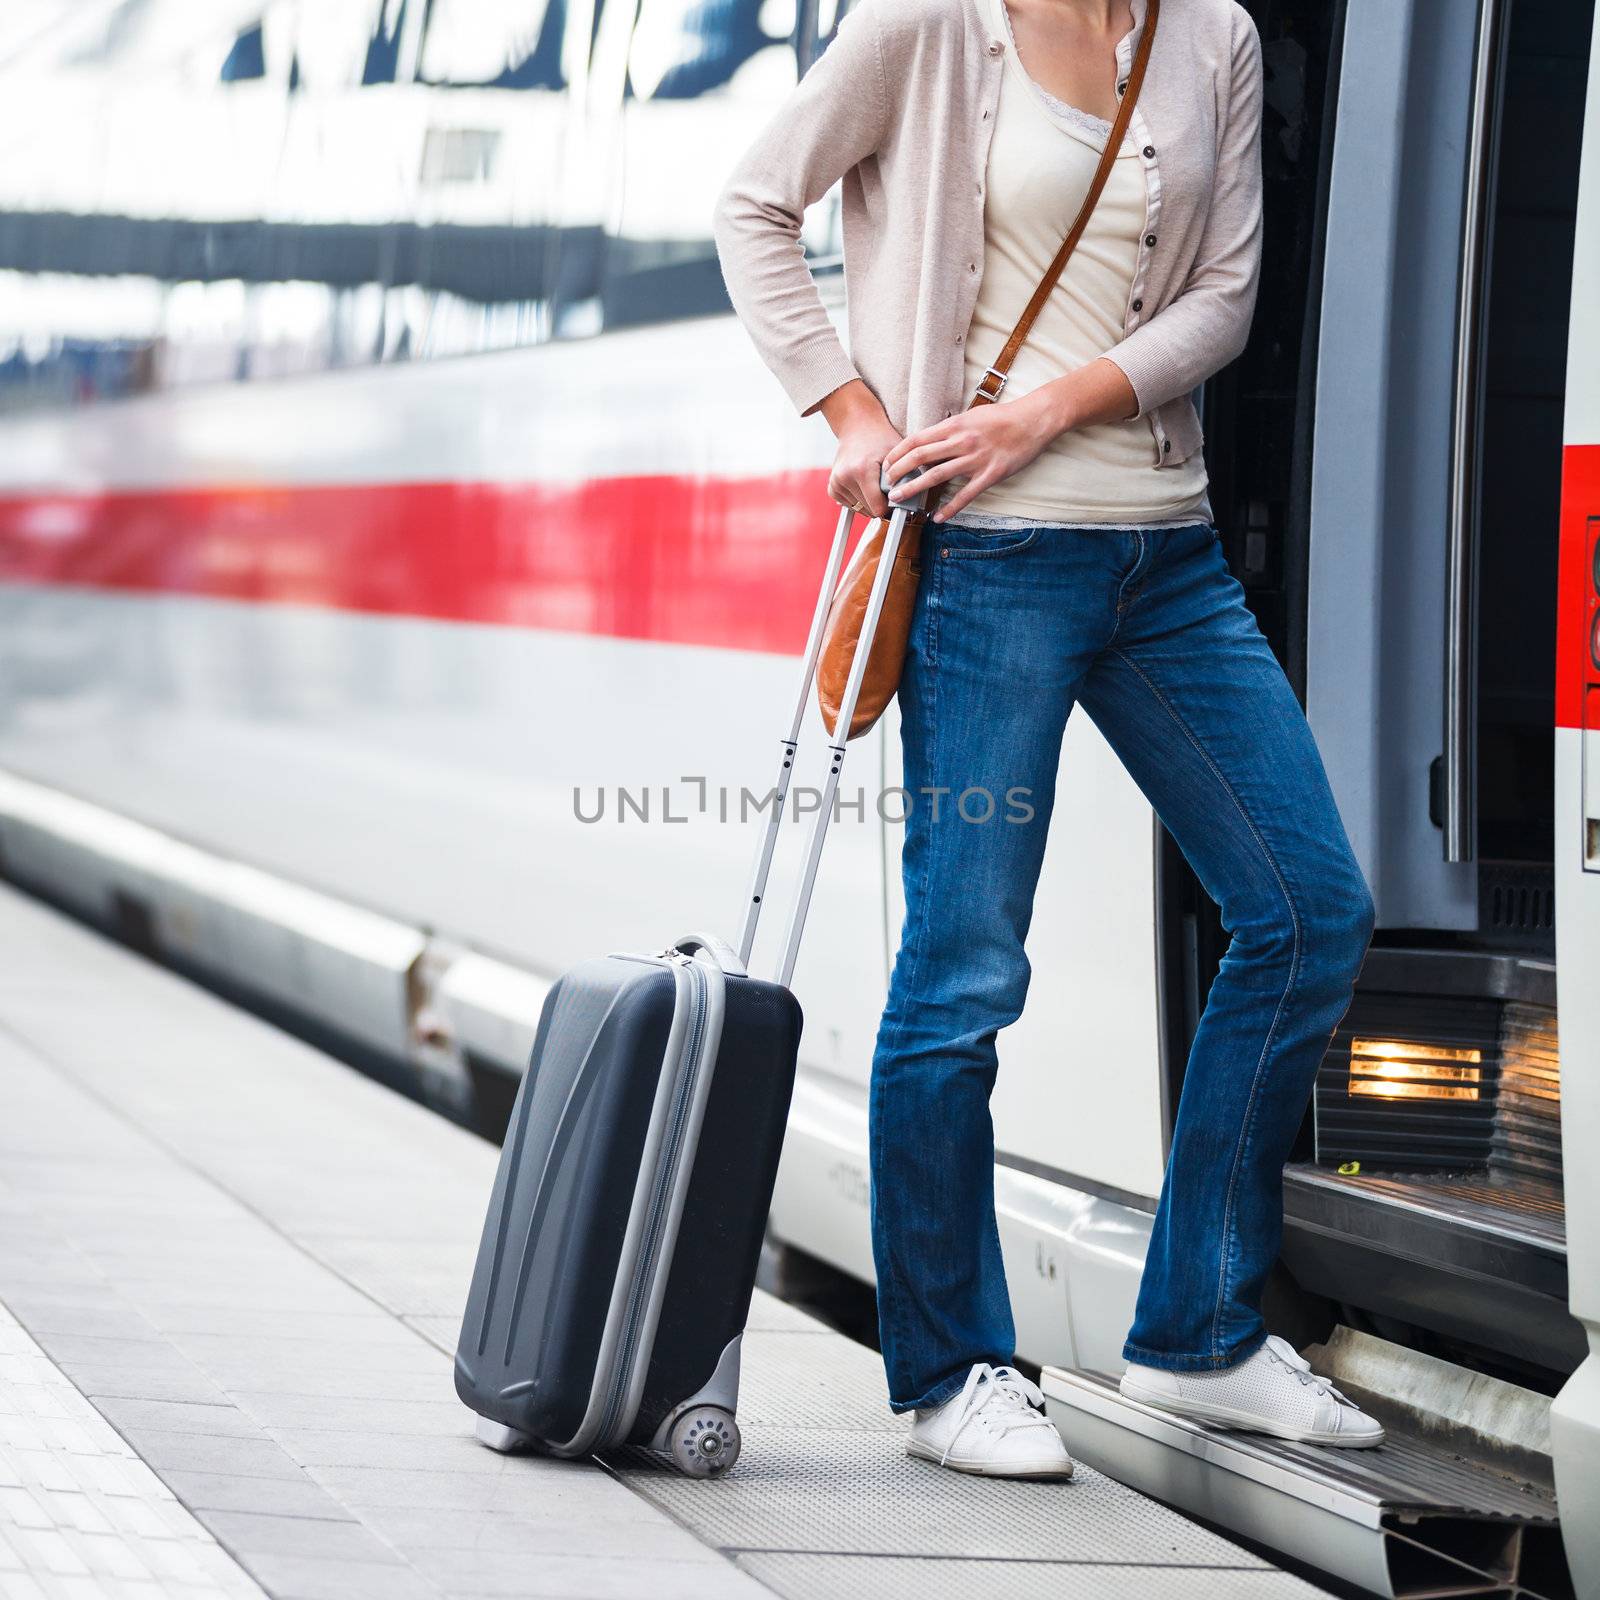 Pretty young woman boarding a train